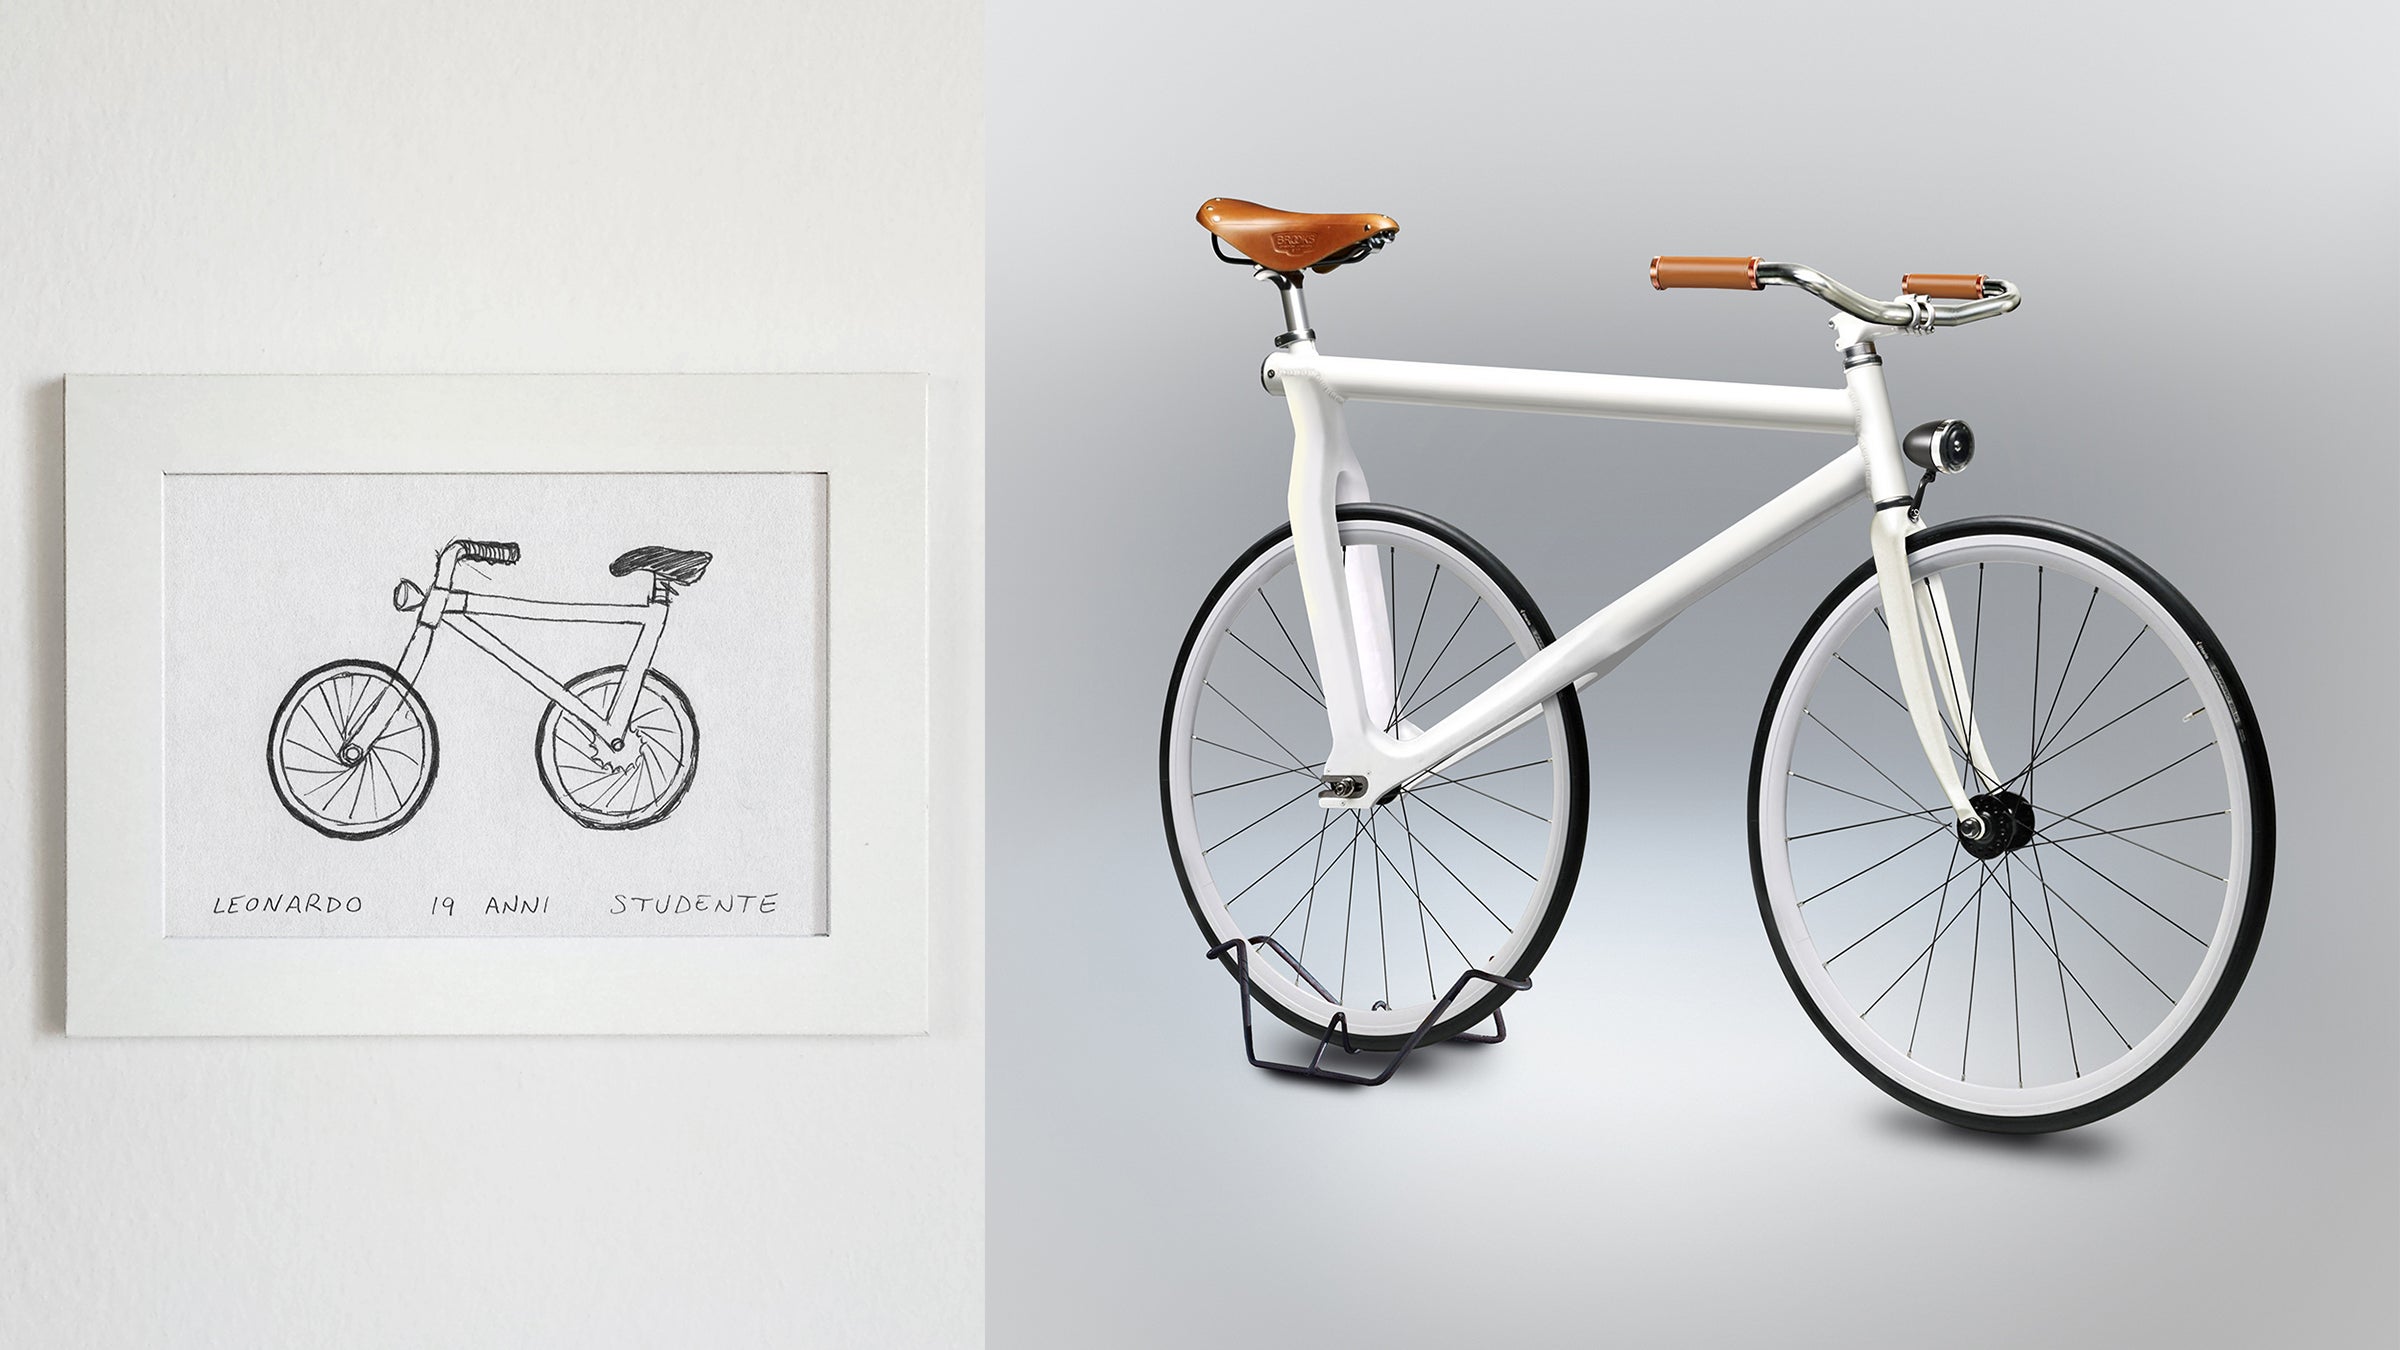 Велосипед получить в подарок. Велосипед Леонардо да Винчи. Gimini велосипед. Итальянский велосипед раскрасить. Фотопроект с велосипедом.